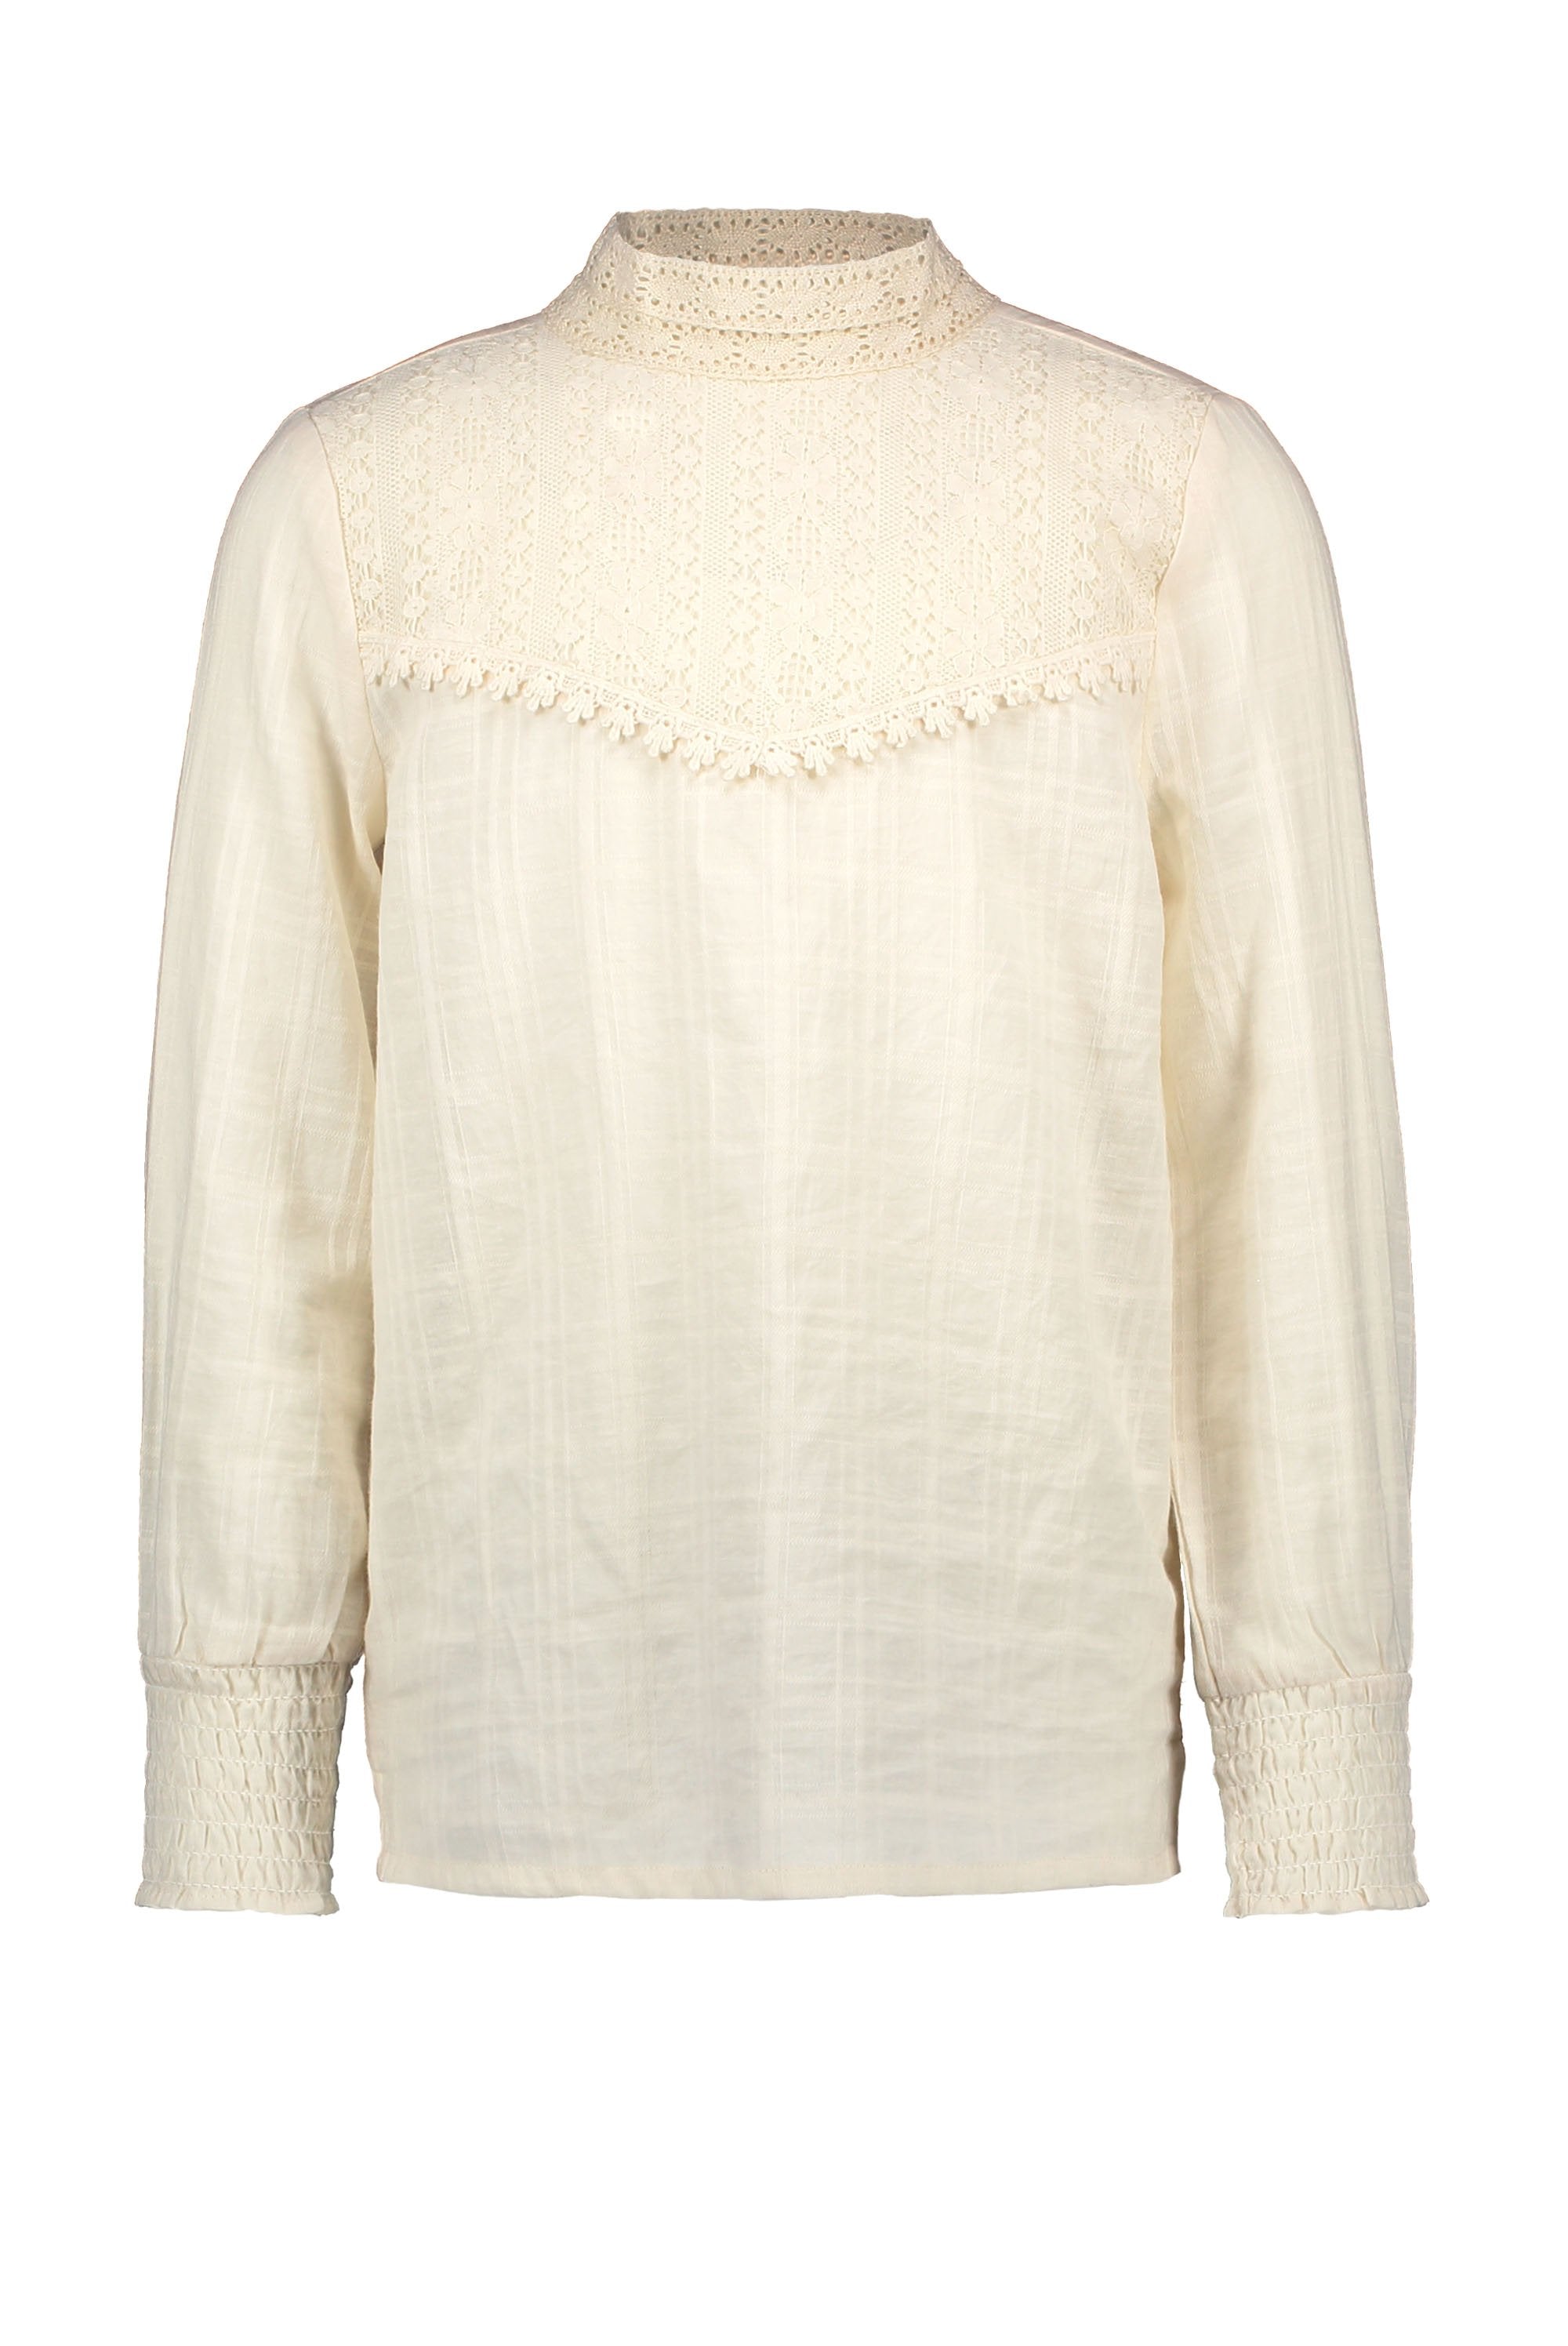 Meisjes Flo girls woven blouse with lace turtle neck van Flo in de kleur Off white in maat 152.